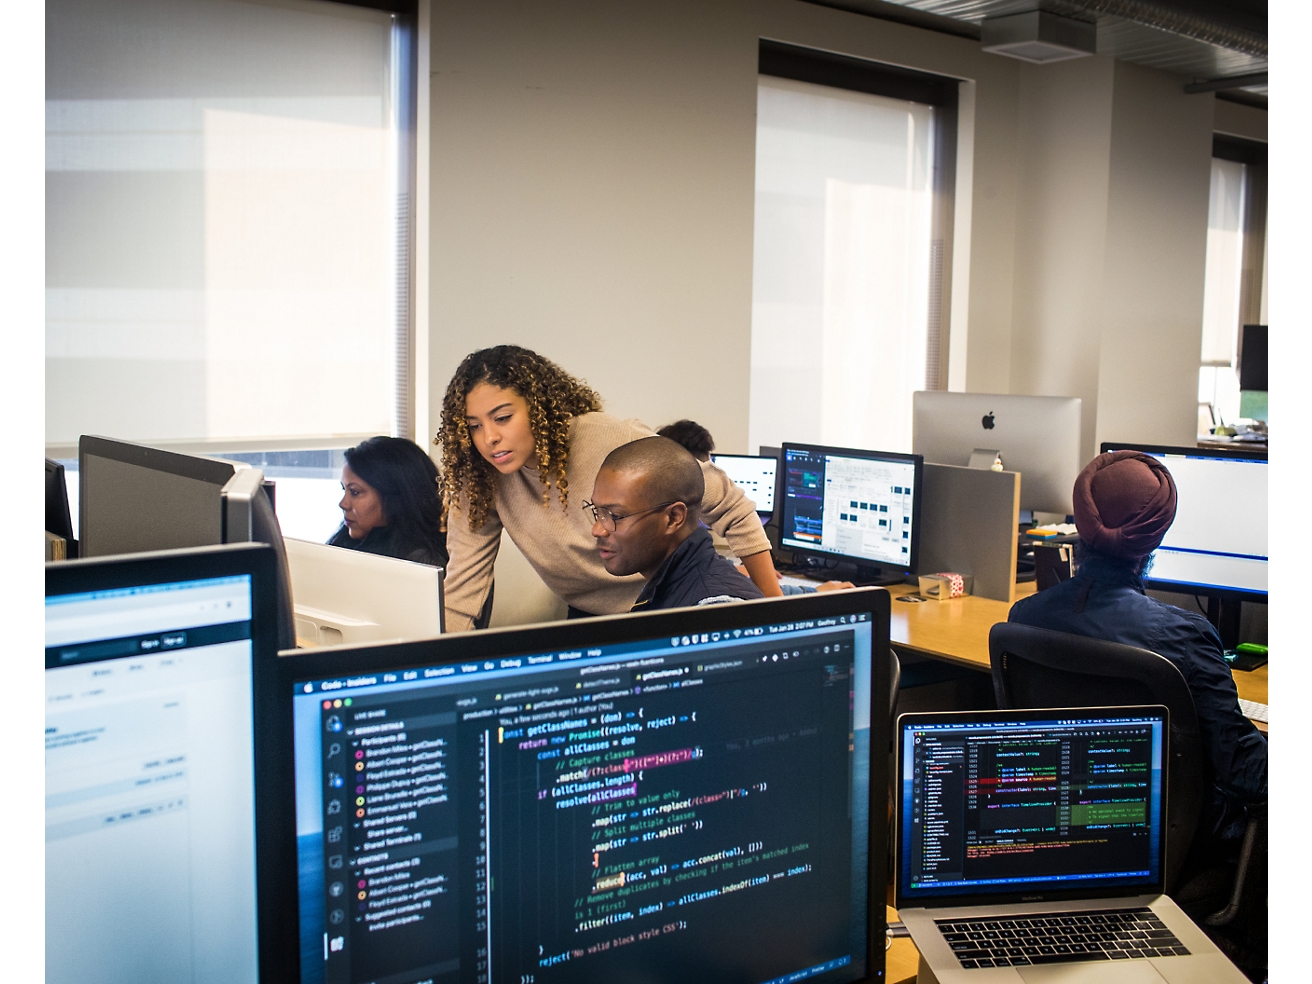 さまざまなコードやデータが表示された画面を中心に、オフィス環境でコンピューターで作業するさまざまなプロフェッショナルたち。